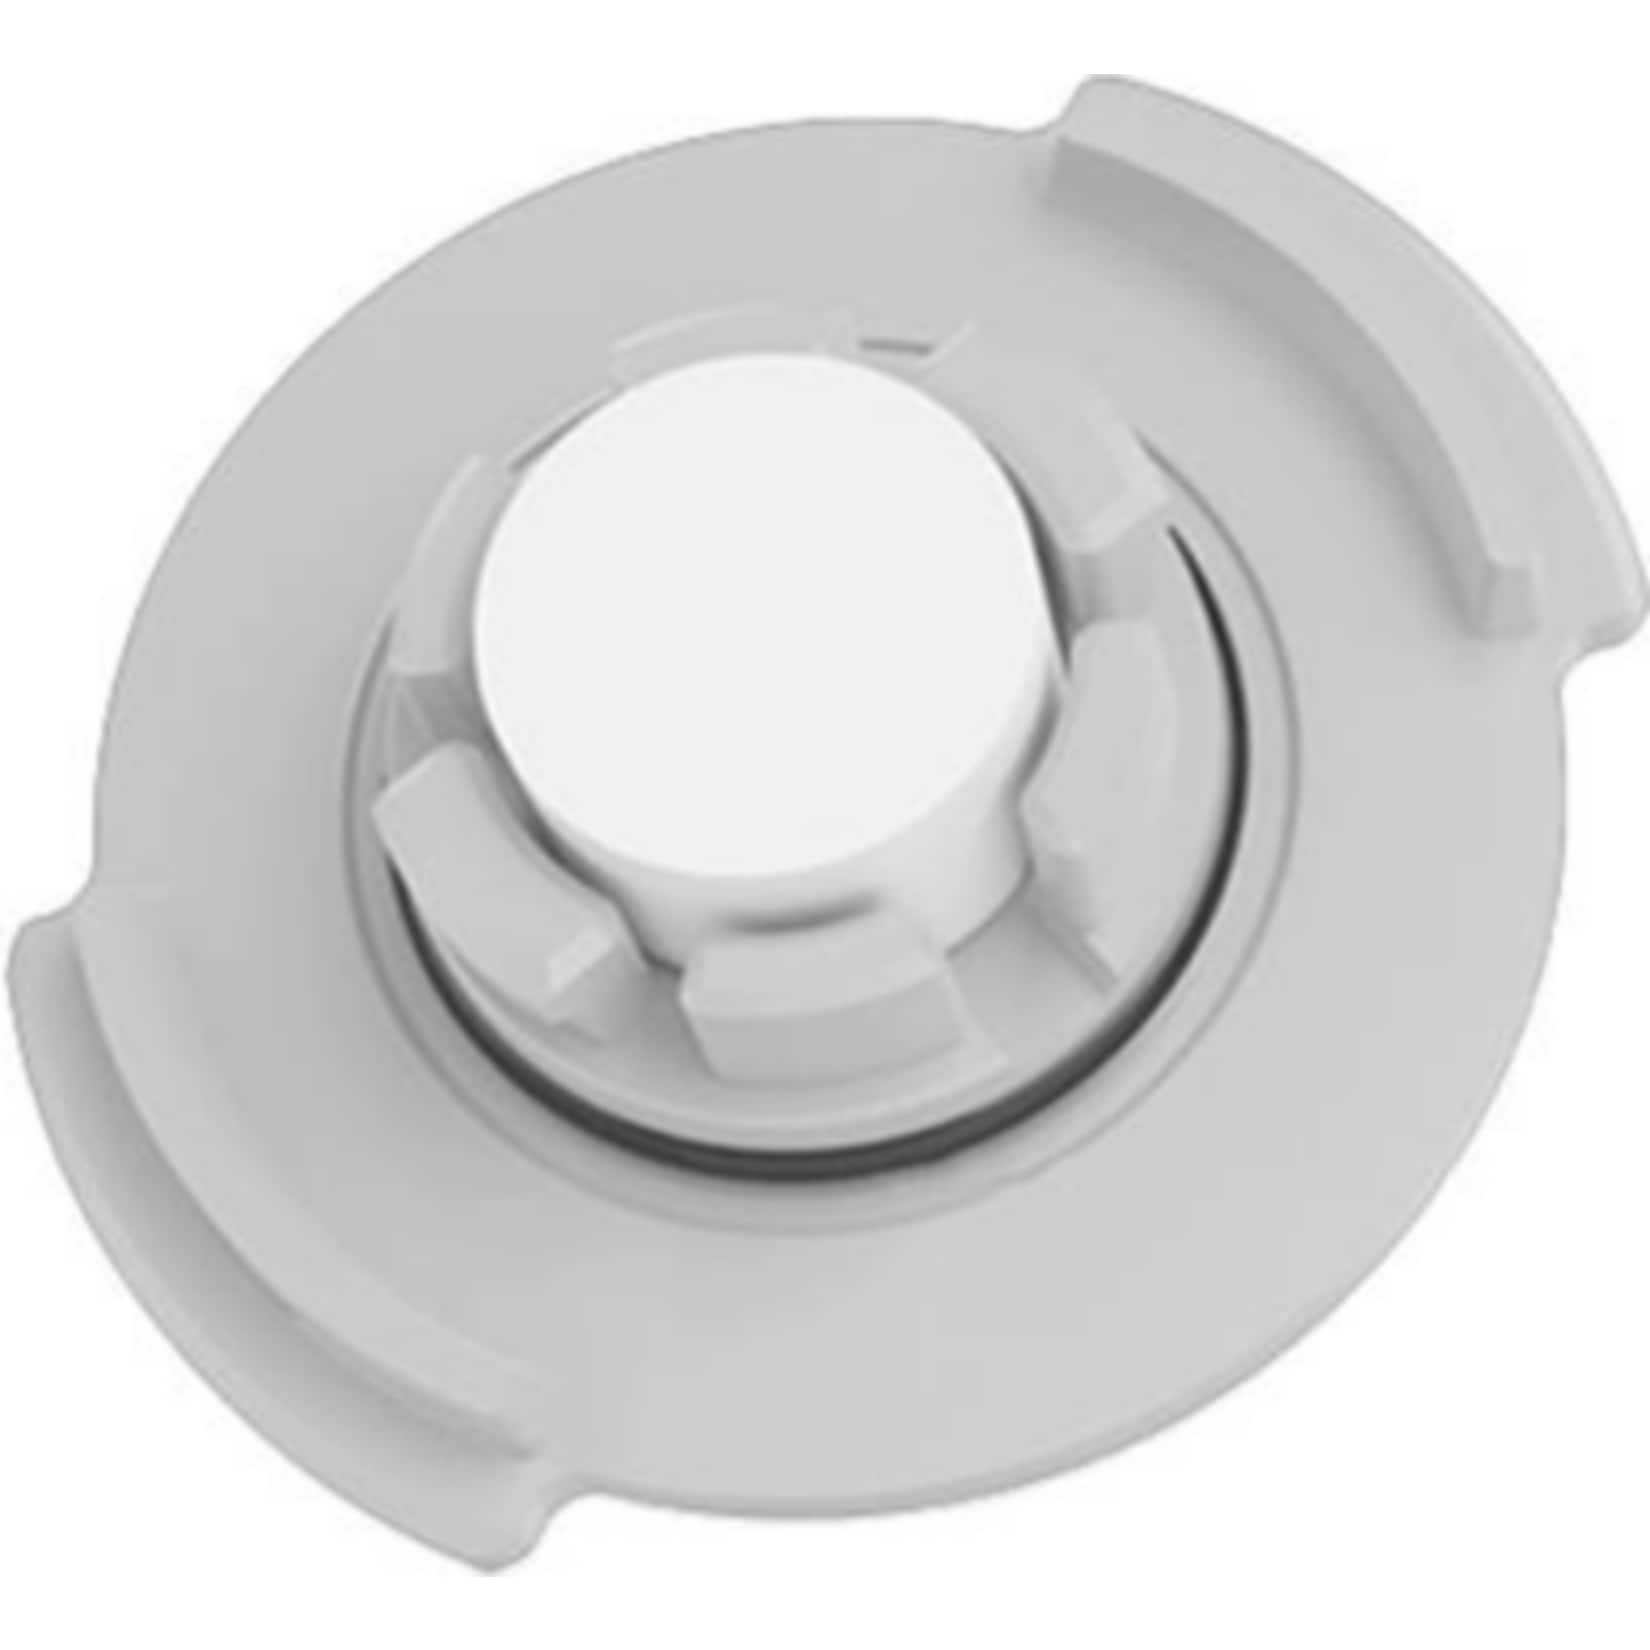 Roborock Wassertank Filter für Roborock S5/S6 (Saugroboter-Zubehör